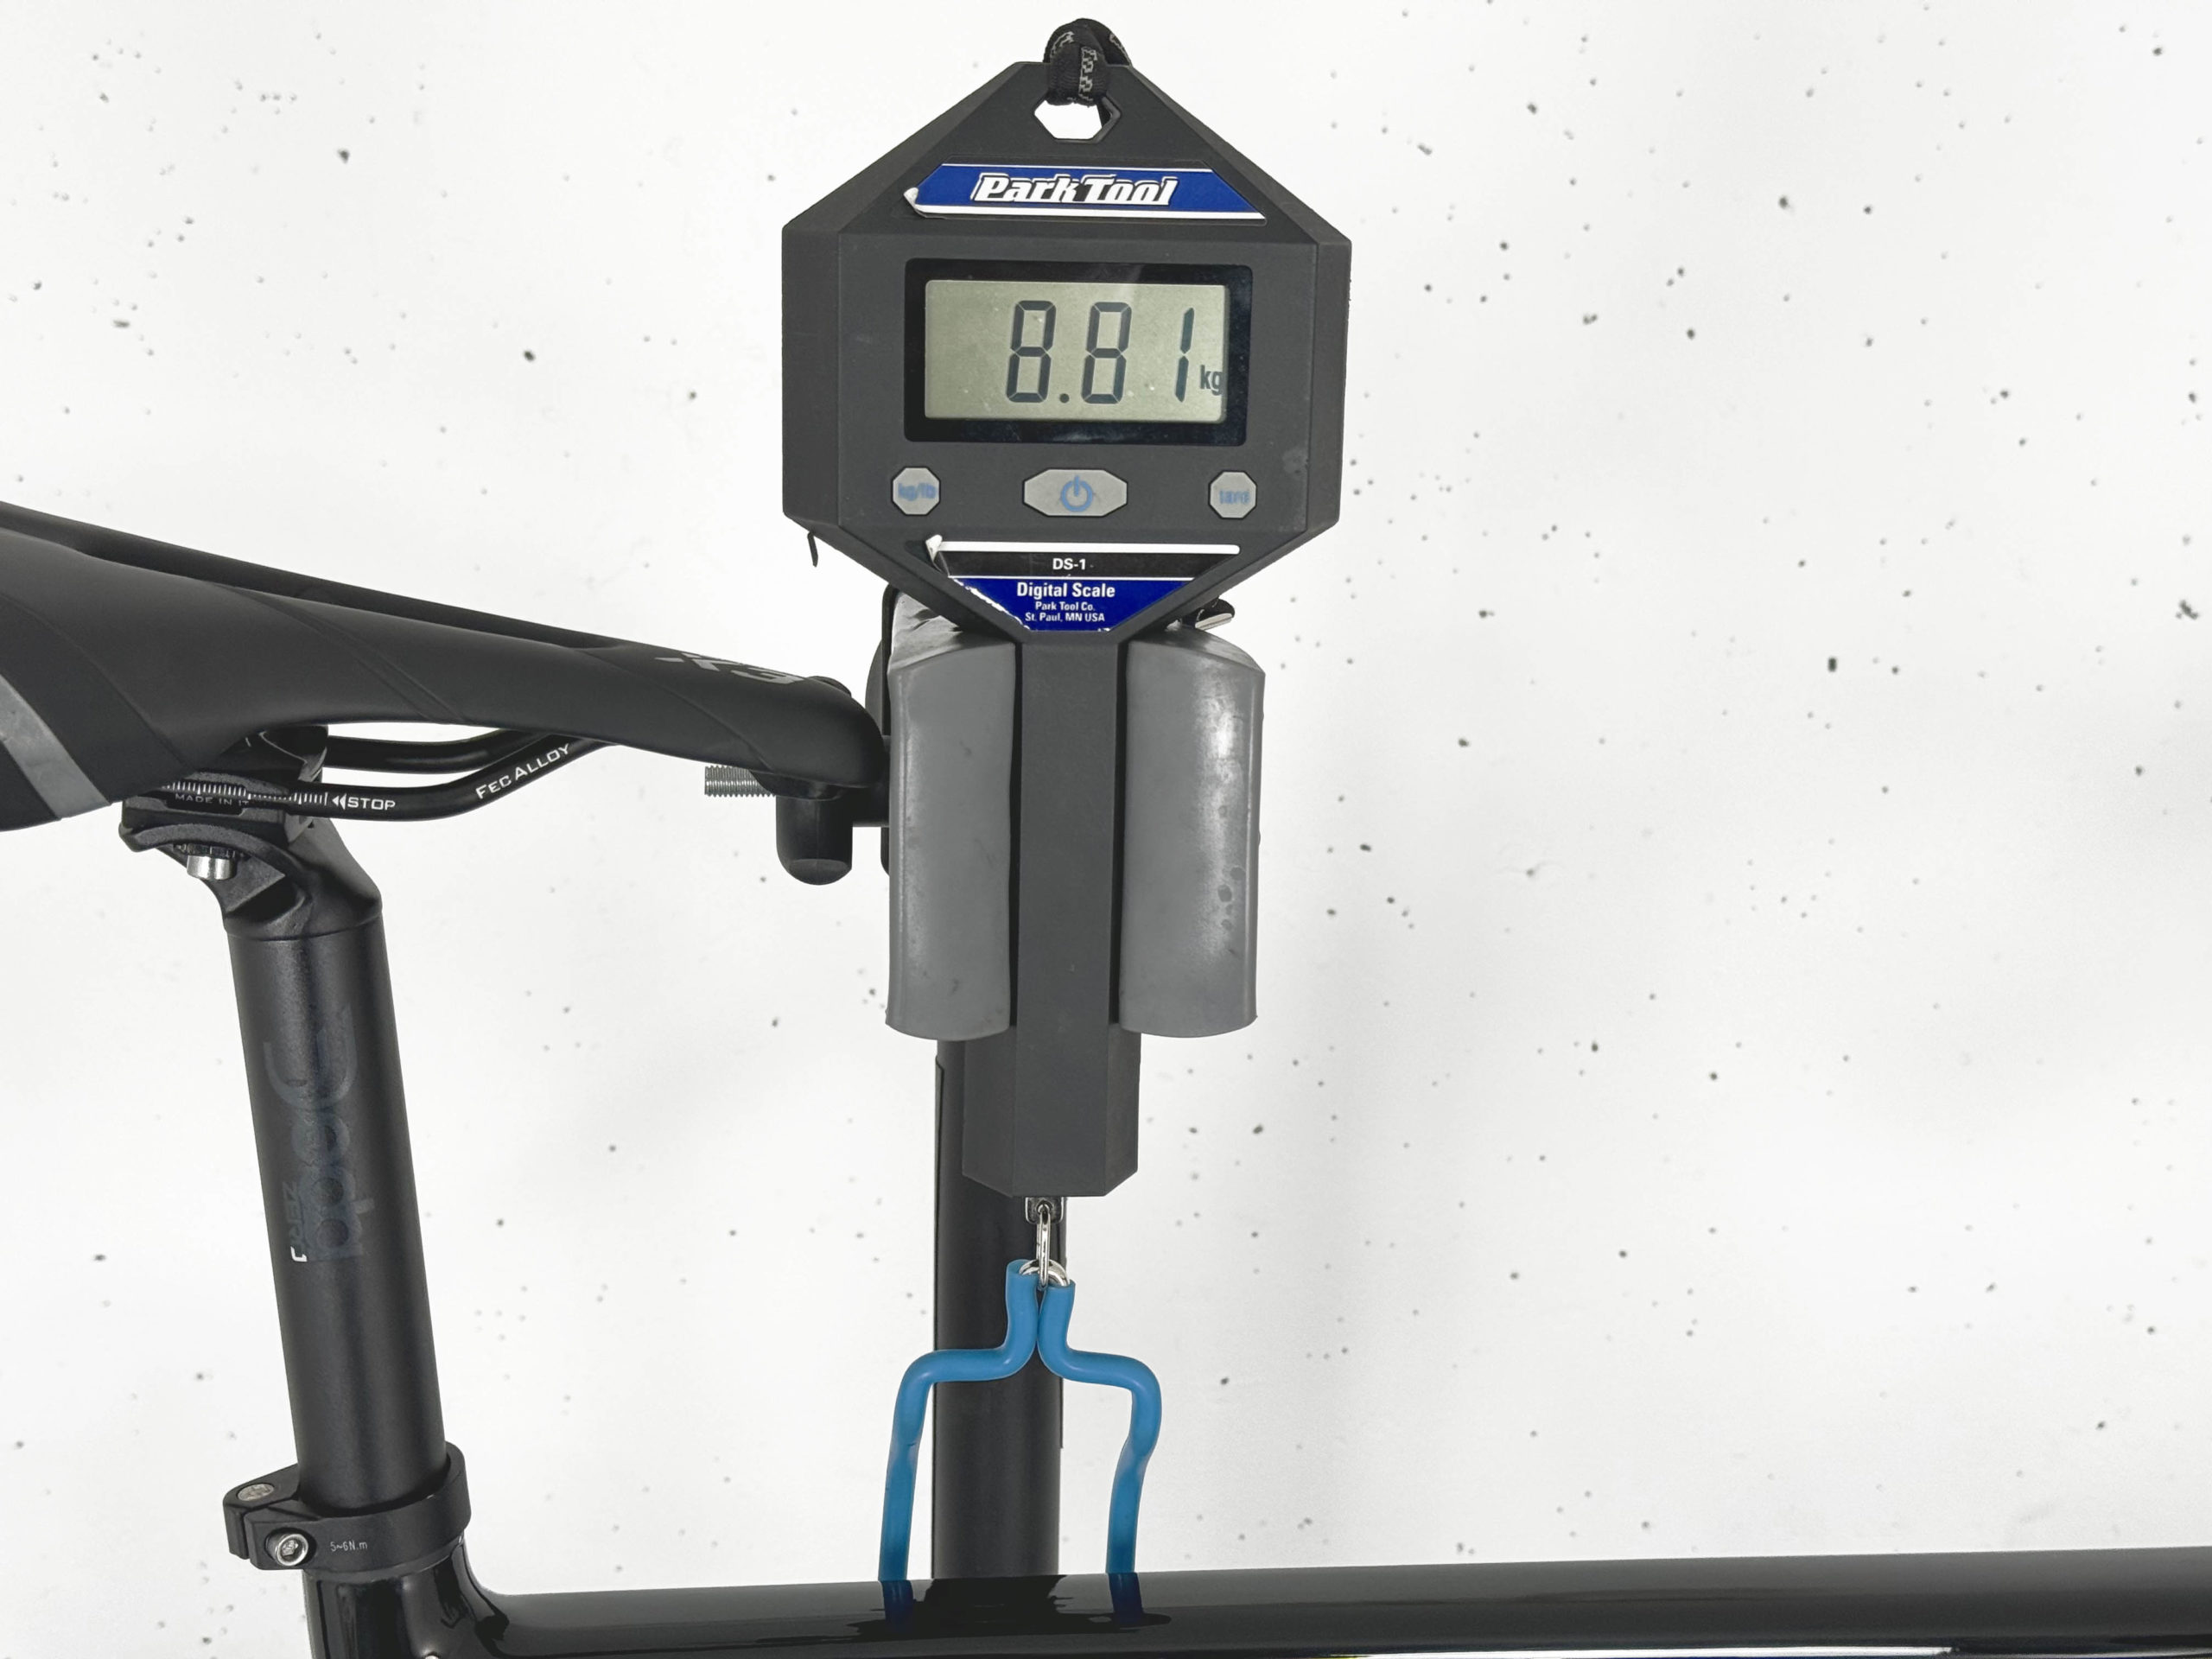 Road Bike Bertin C32 Shimano Ultegra / Roues Vision Team 35 Disc Noir